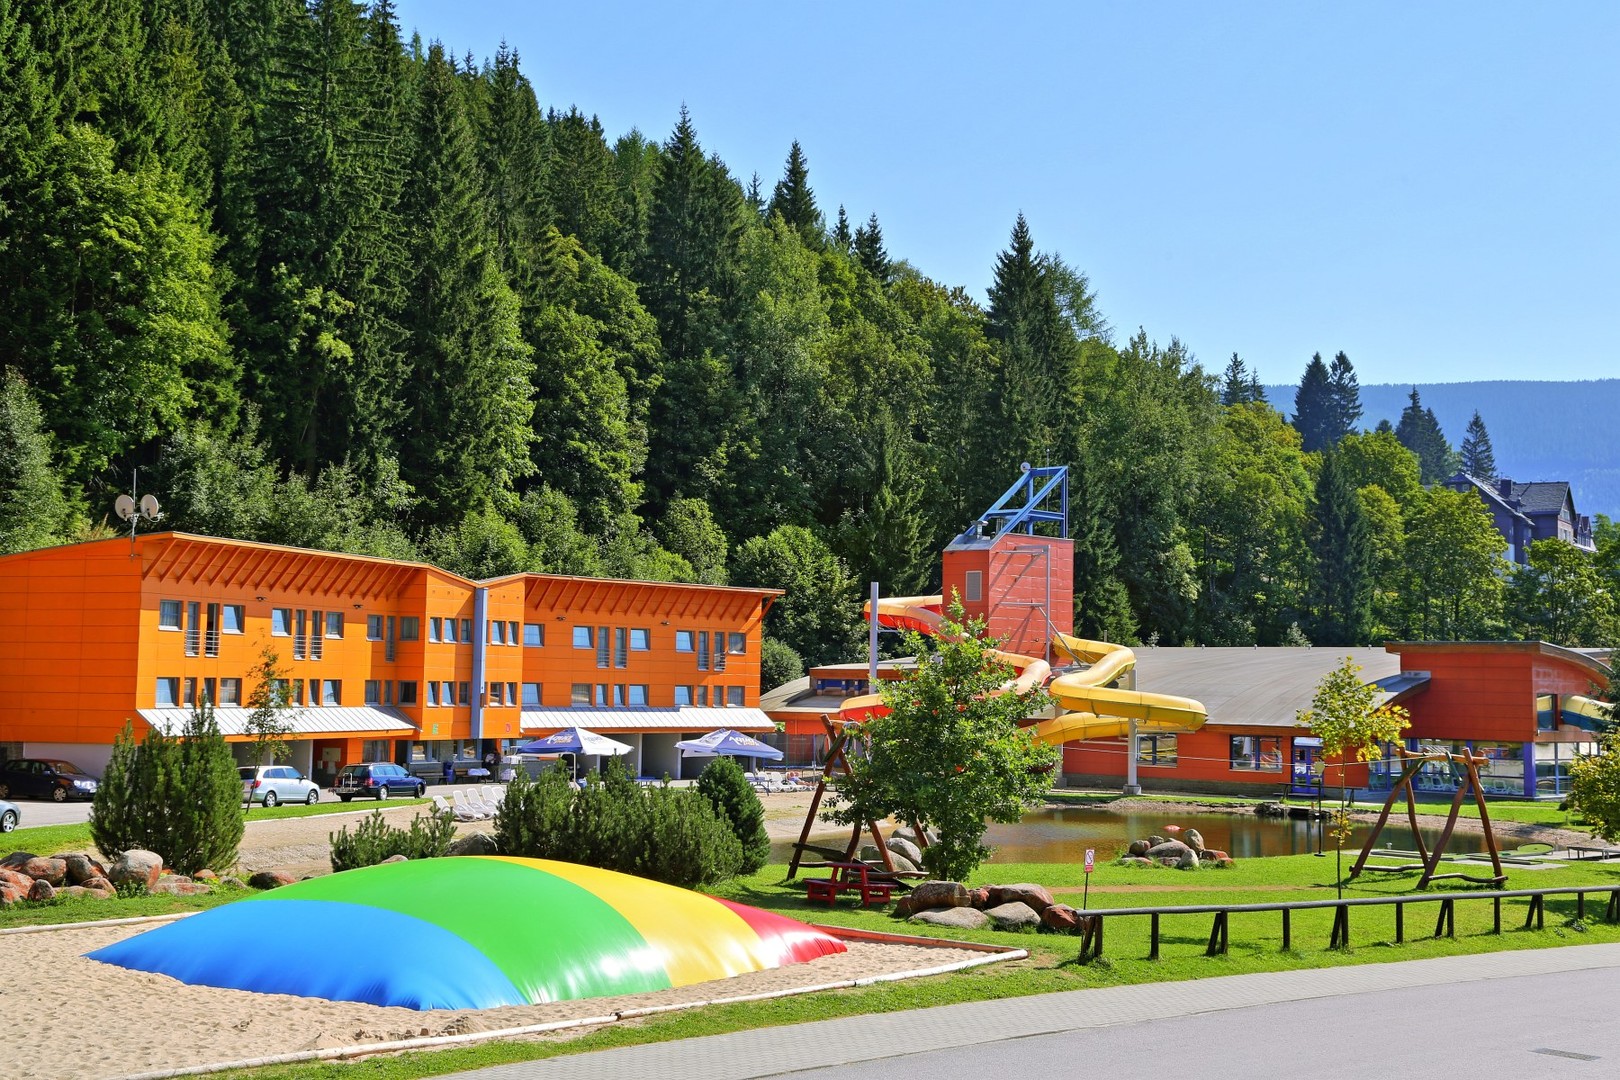 Hotel Aquapark Špindlerův Mlýn